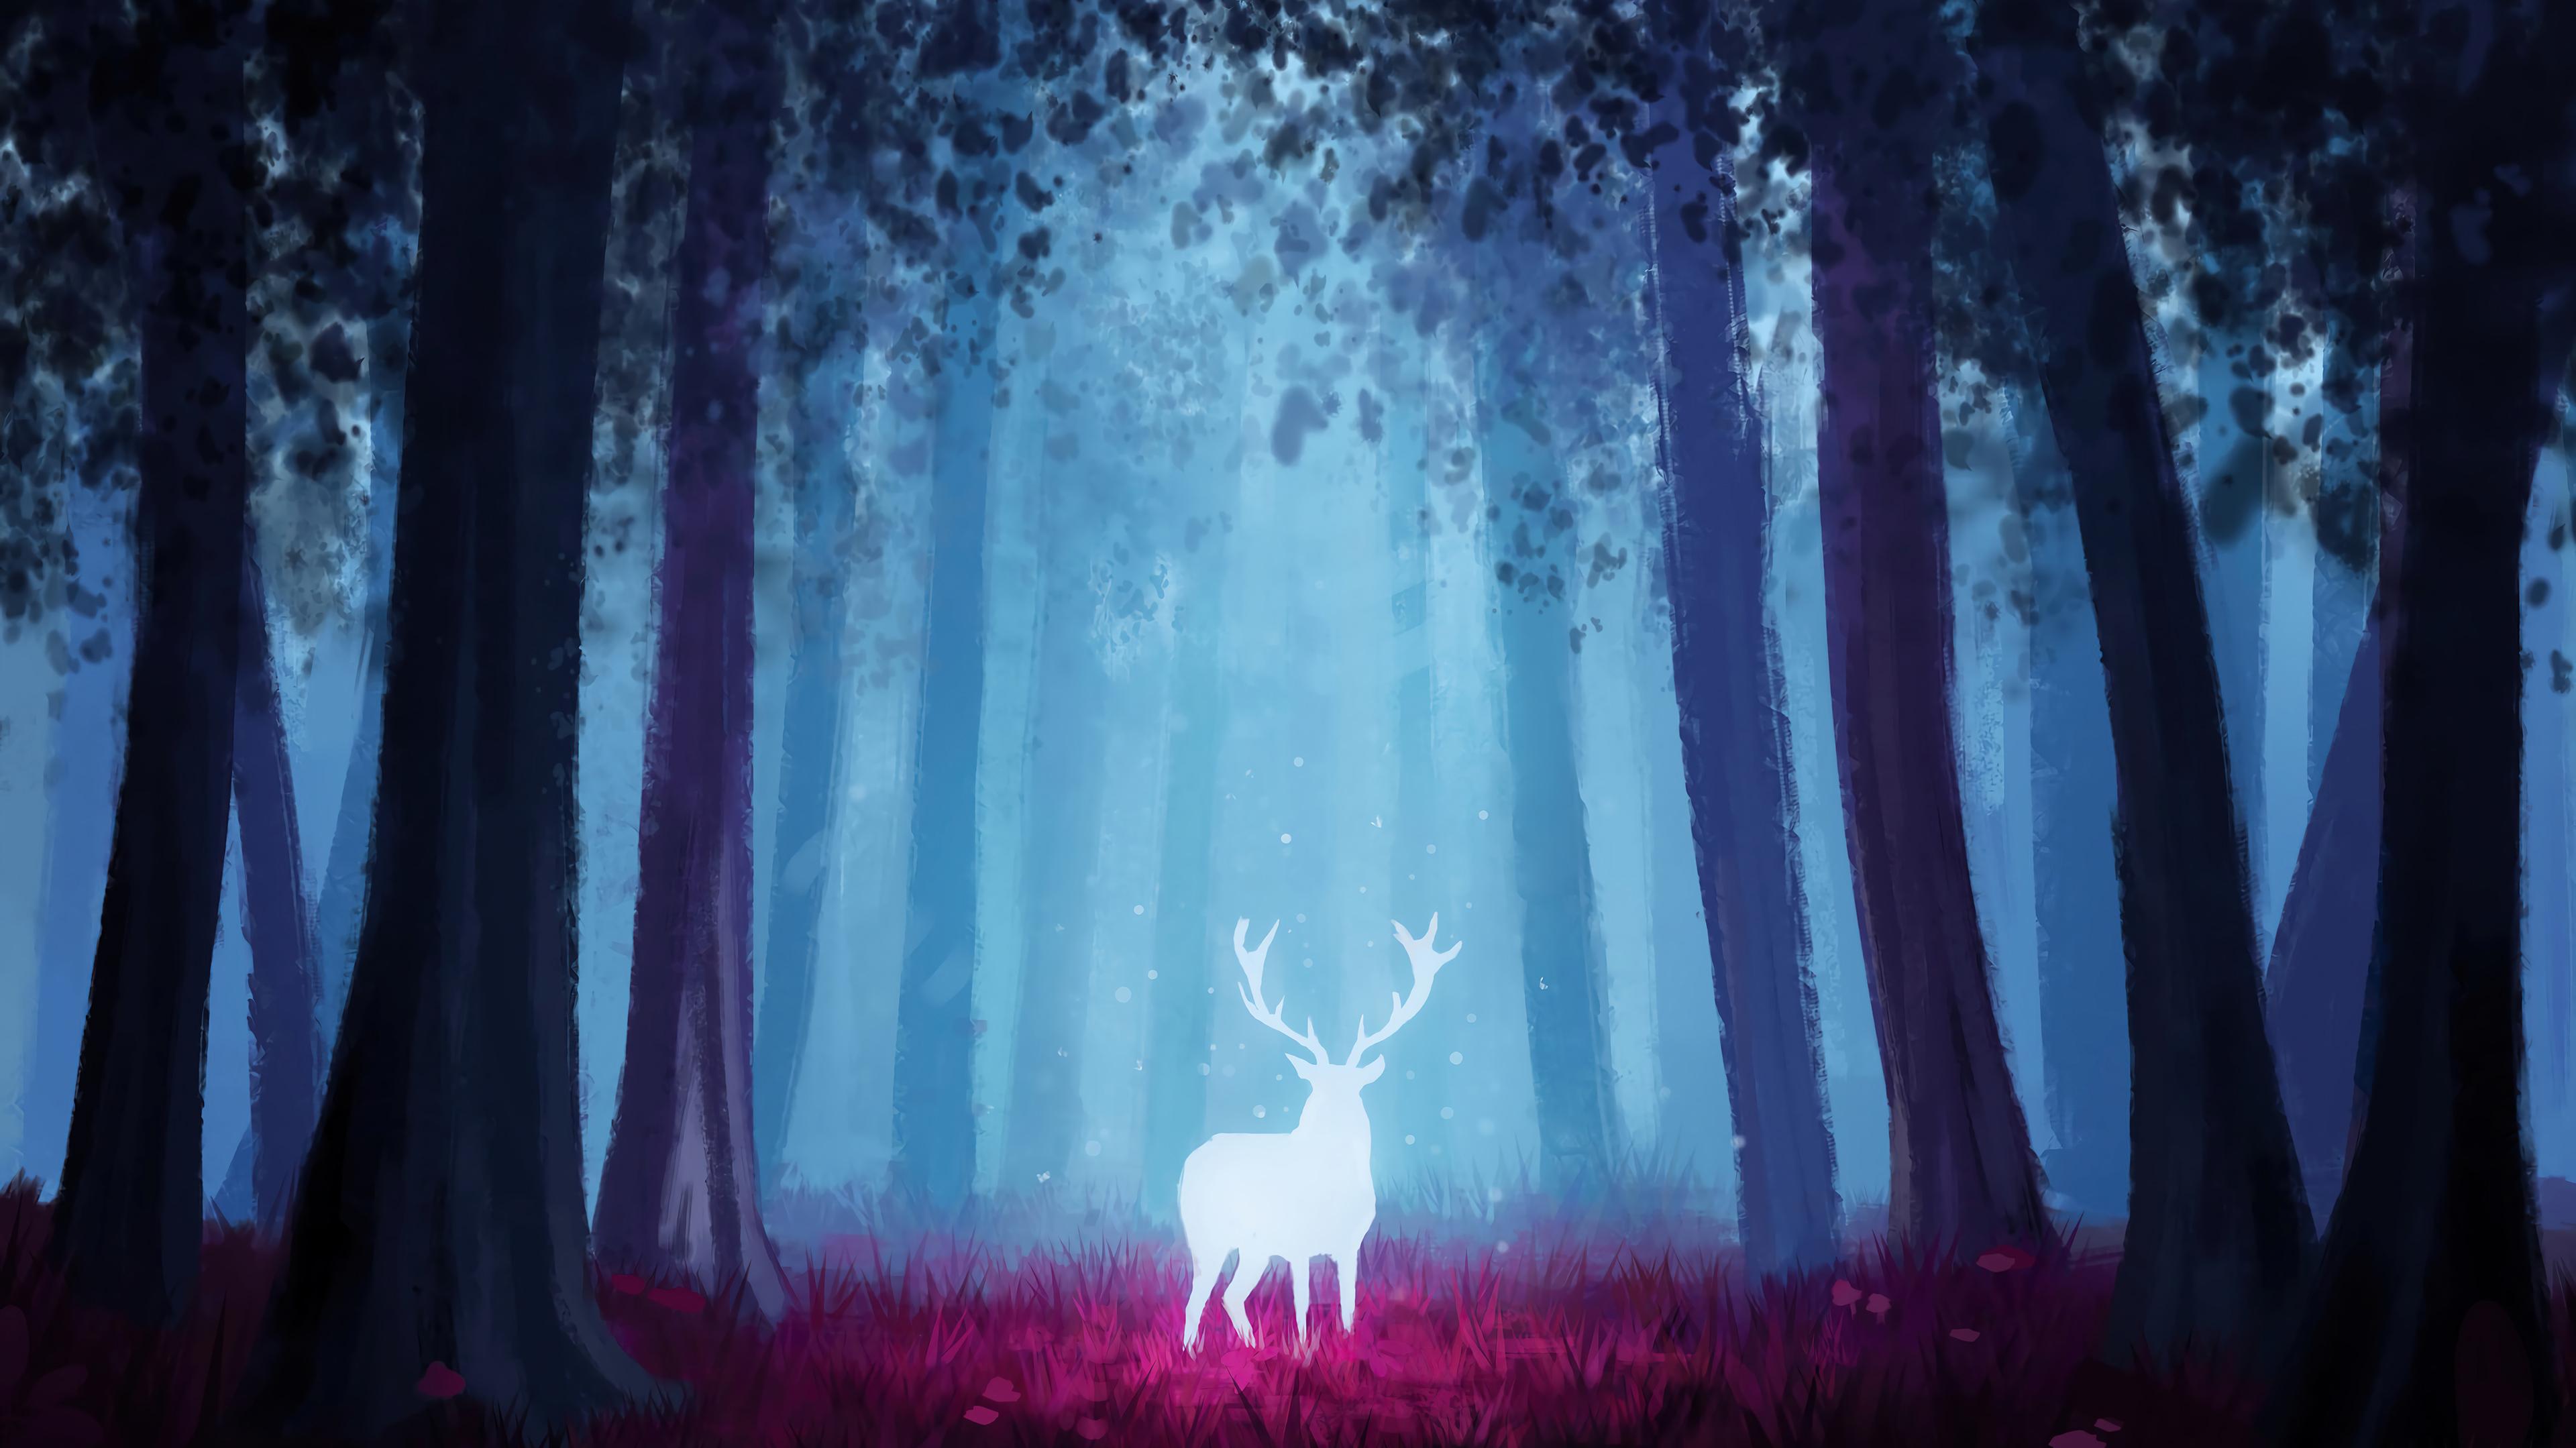 Deer Fantasy Forest Scenery Art HD 4k Wallpaper